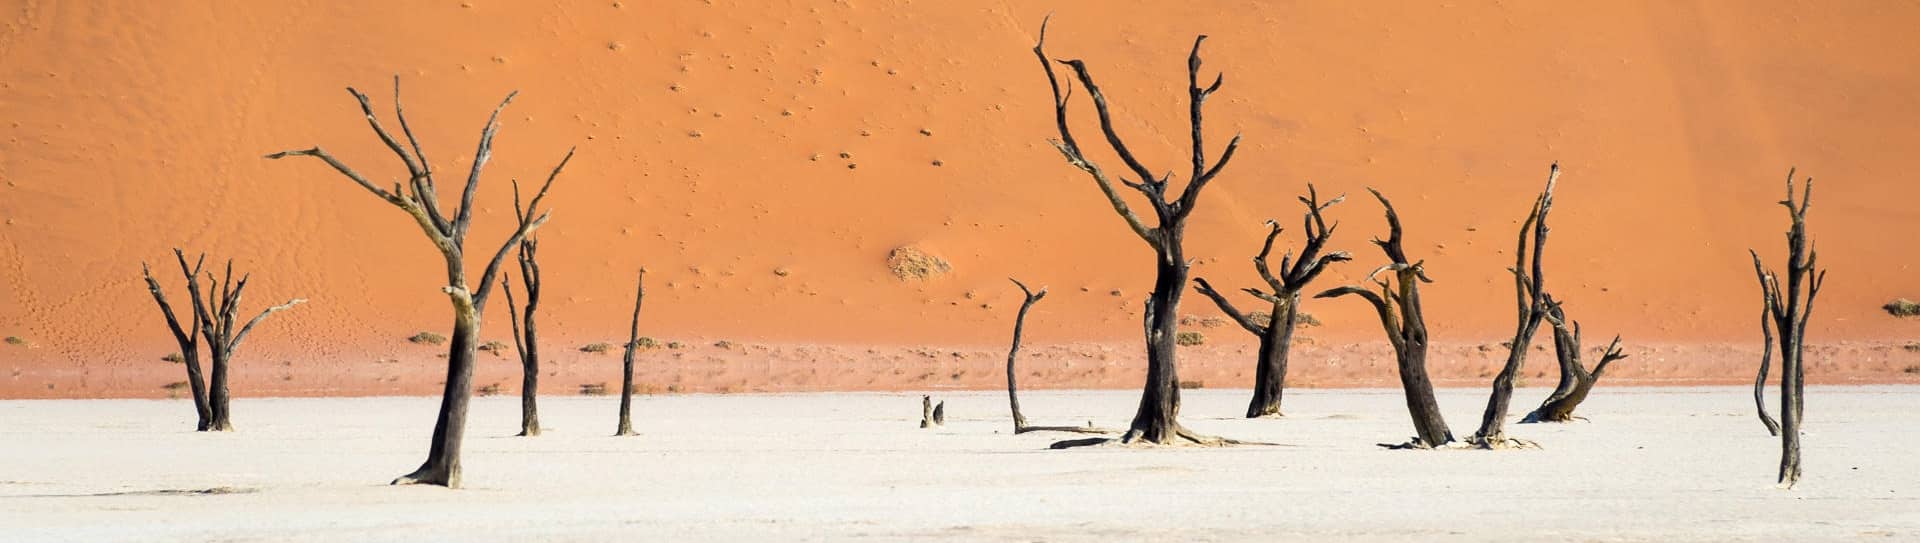 Voyage Namibie desert Namib Naukluft Sossusvlei